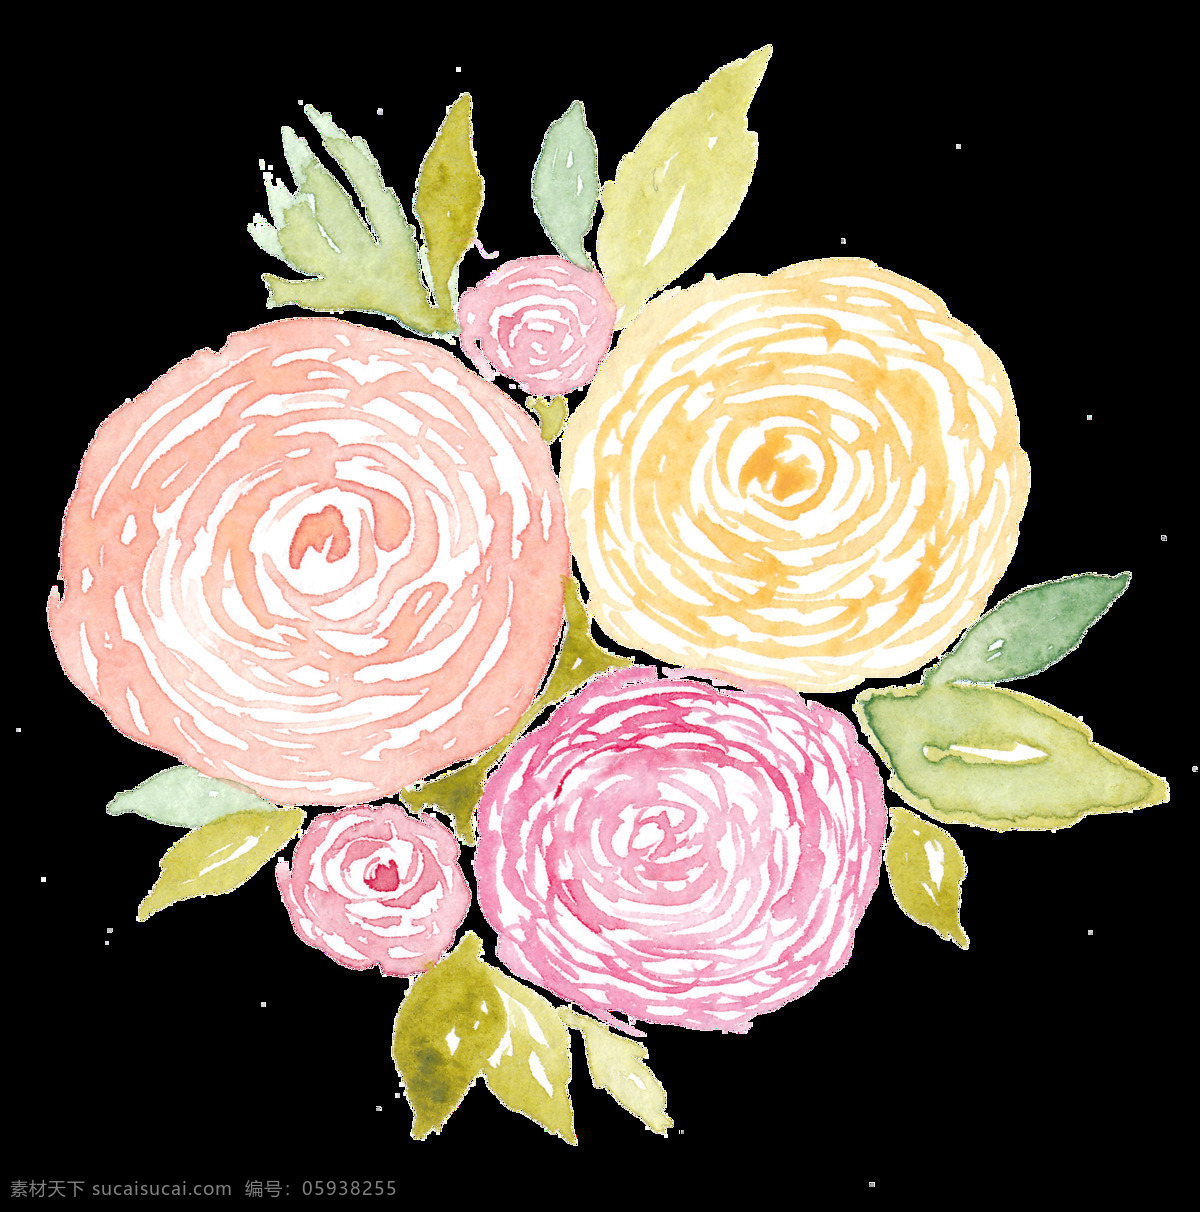 手绘 水彩 花 透明 粉红色 黄色 五朵花 两朵小花 叶子 透明素材 免扣素材 装饰图片